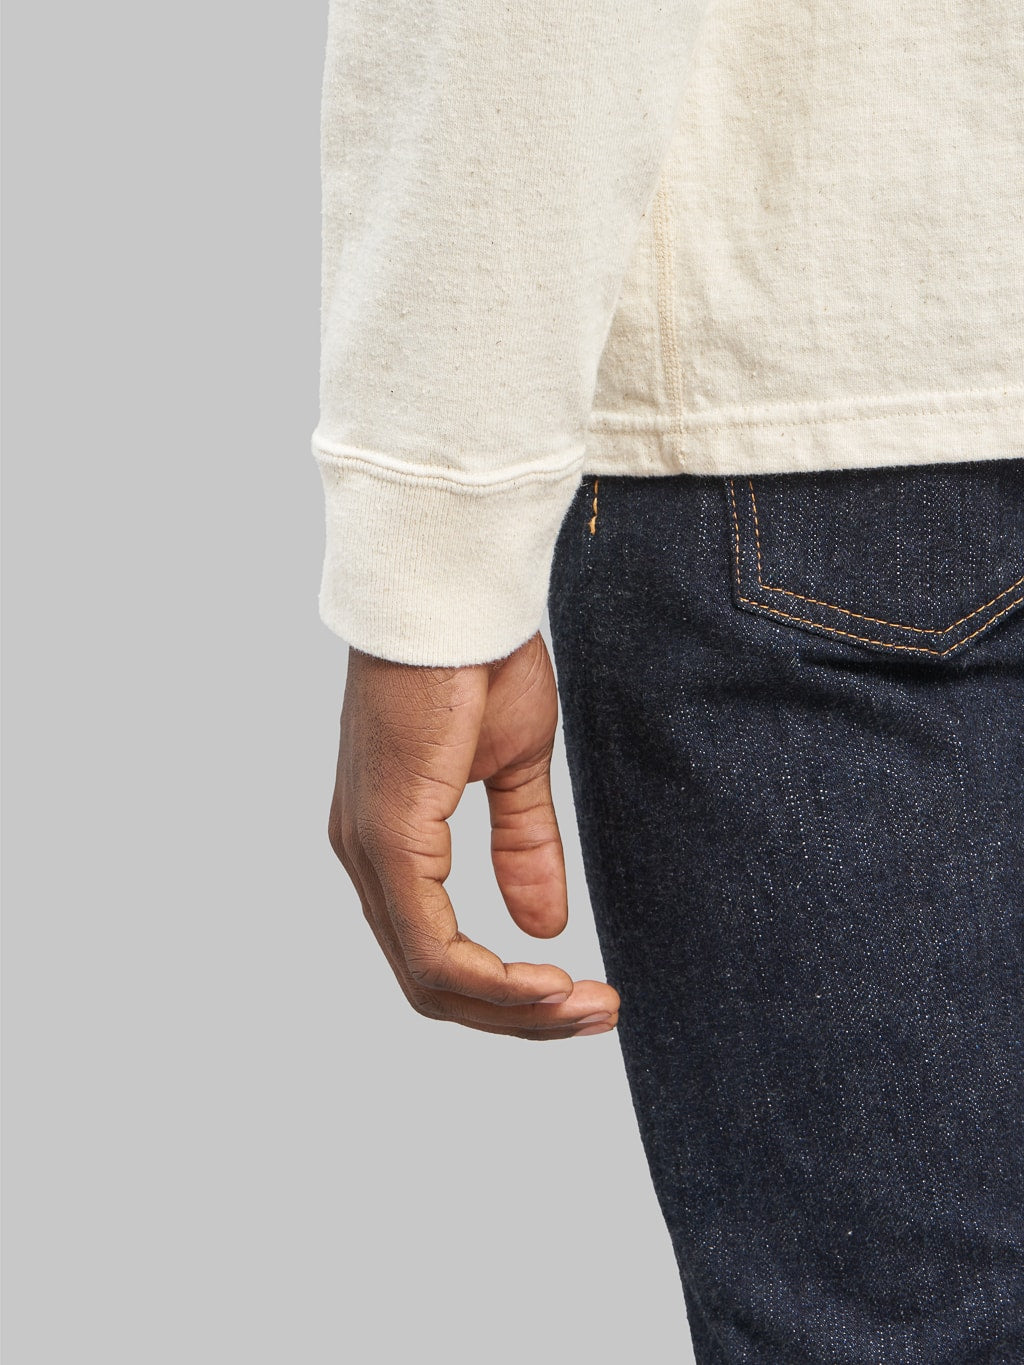 Samurai jeans japanese long sleeve tshirt natural cuff seam